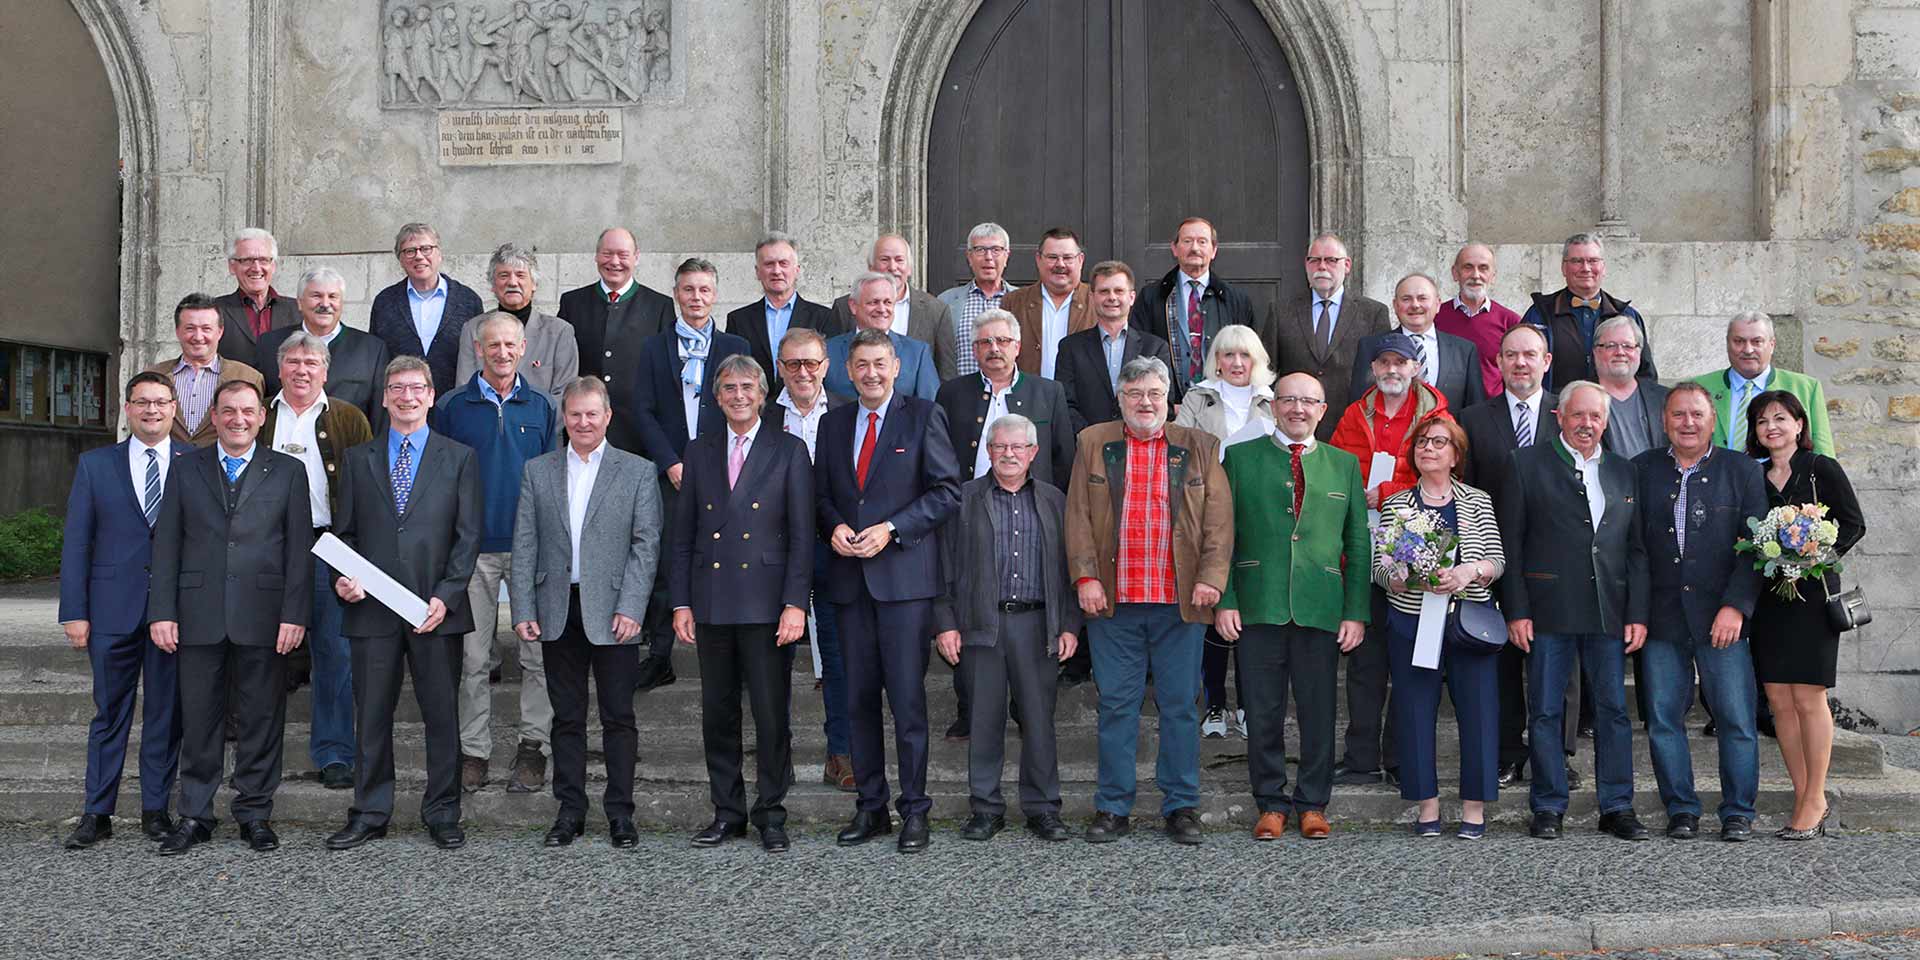 In Regensburg ehrte die Handwerkskammer ihre „Goldenen“ Handwerksmeister. Es gratulierten HWK-Präsident Dr. Georg Haber (1. Reihe 6. v. li.), Regierungspräsident Axel Bartelt (1. Reihe 5. v. li.) und Geschäftsführer Alexander Stahl (1. Reihe 1. v. li.).  (Foto: Foto Graggo)